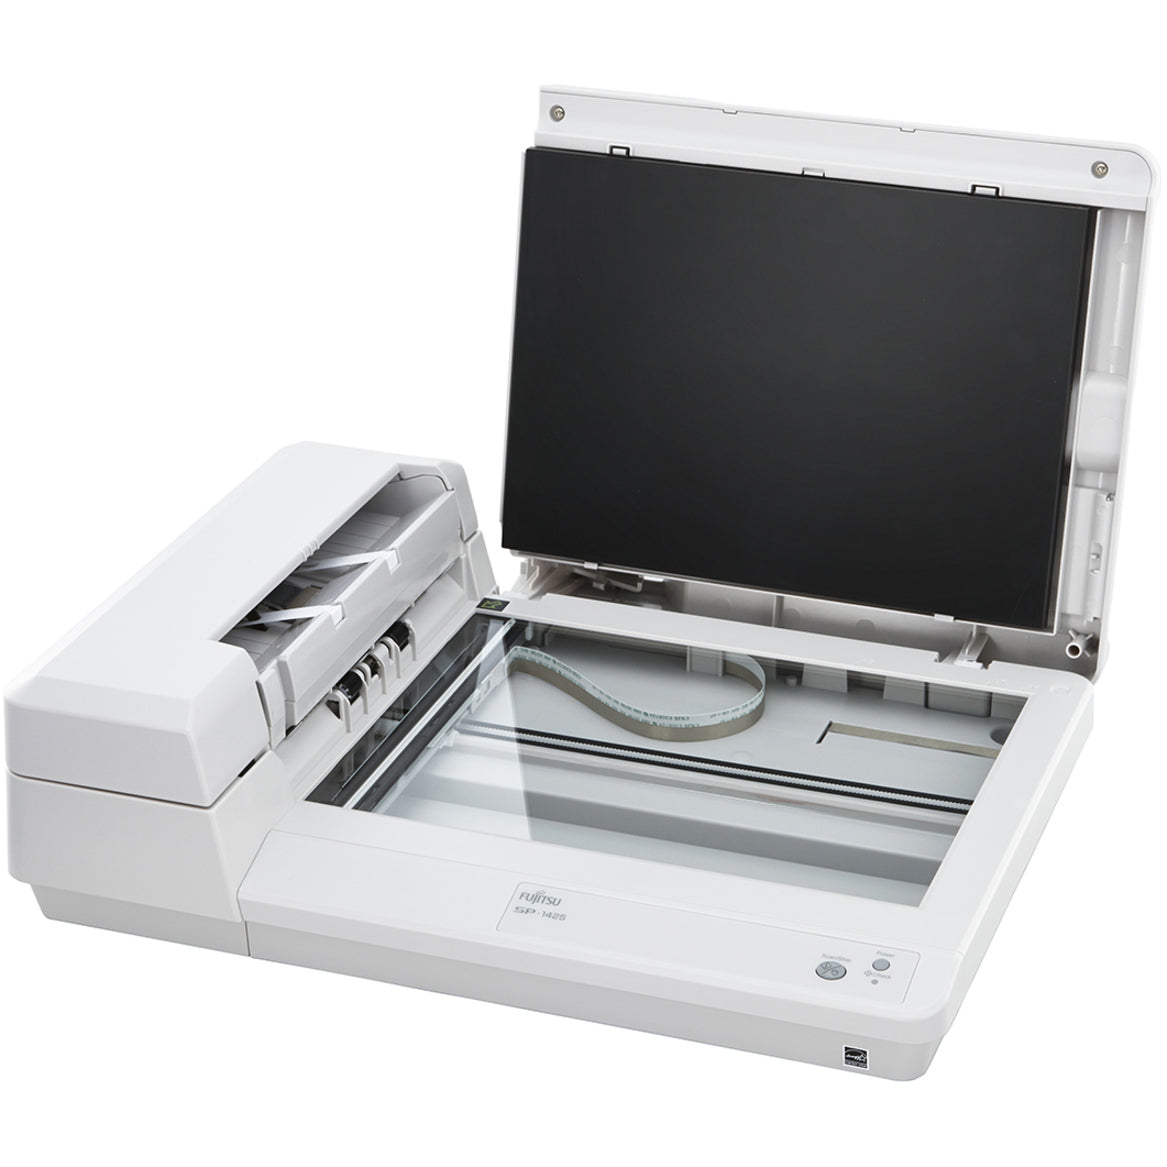 Ricoh PA03753-B005 Image Scanner SP-1425, Flatbed Scanner - 600 dpi Optical, A4 Size, Duplex Scanning